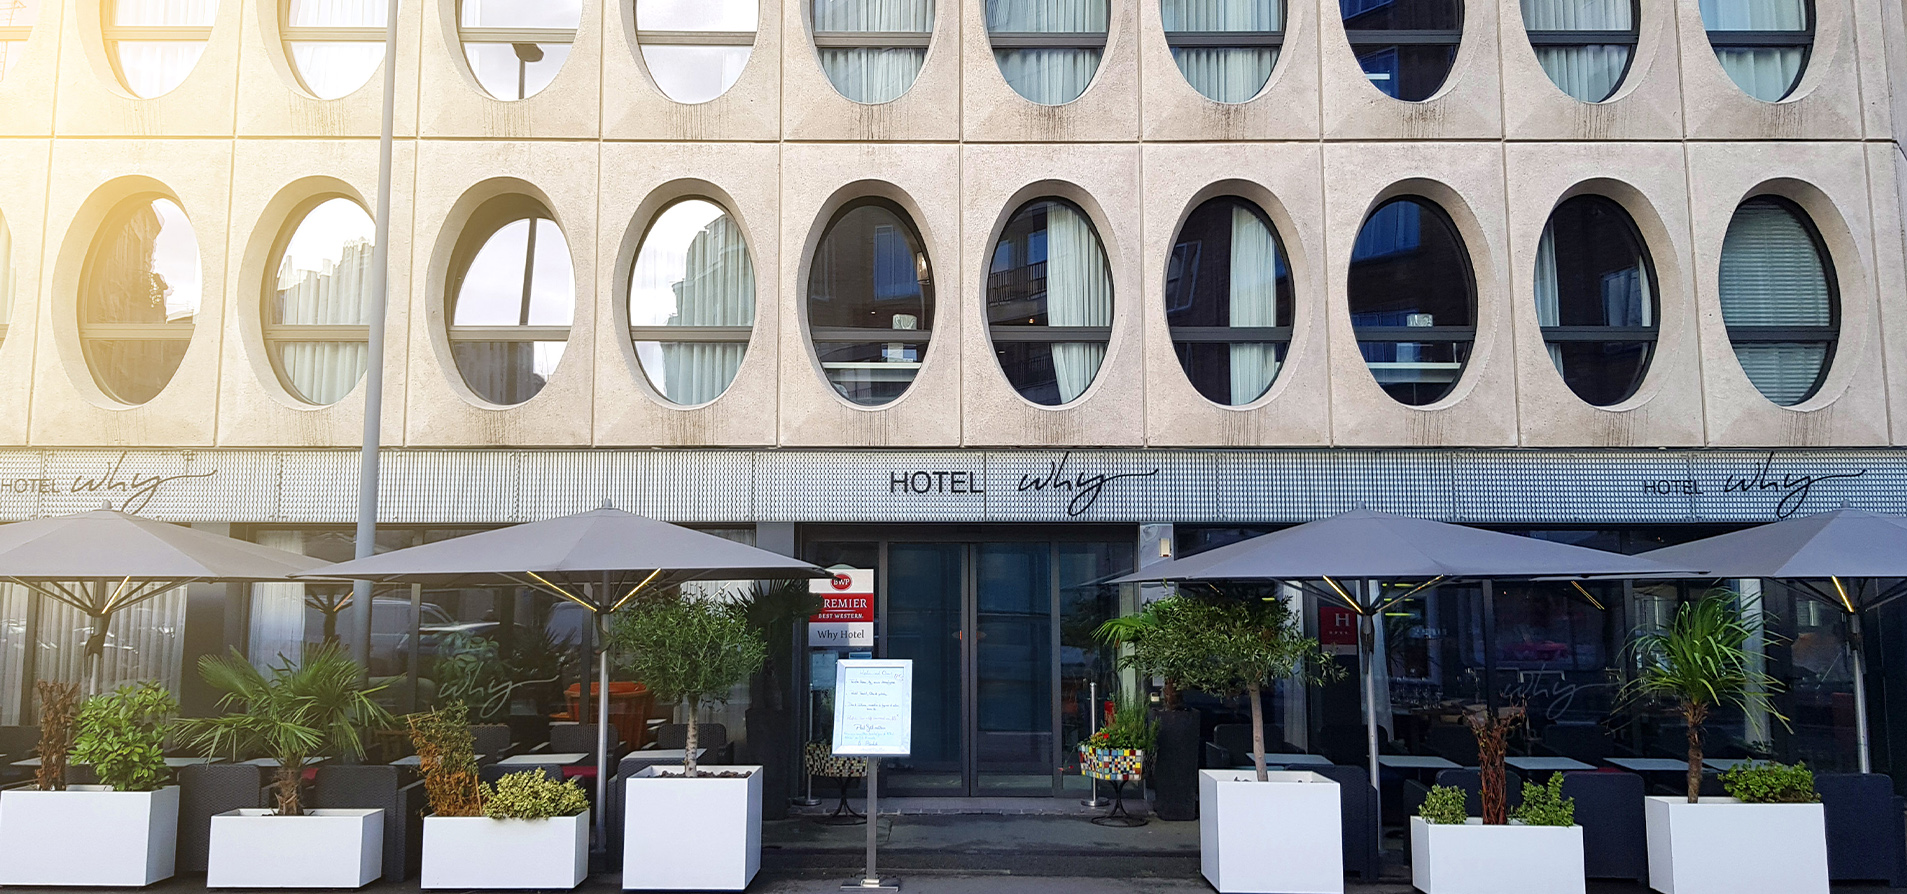 Hotel Why Lille - Energy pro Bureau d'études thermique Paris et France pour les architectes